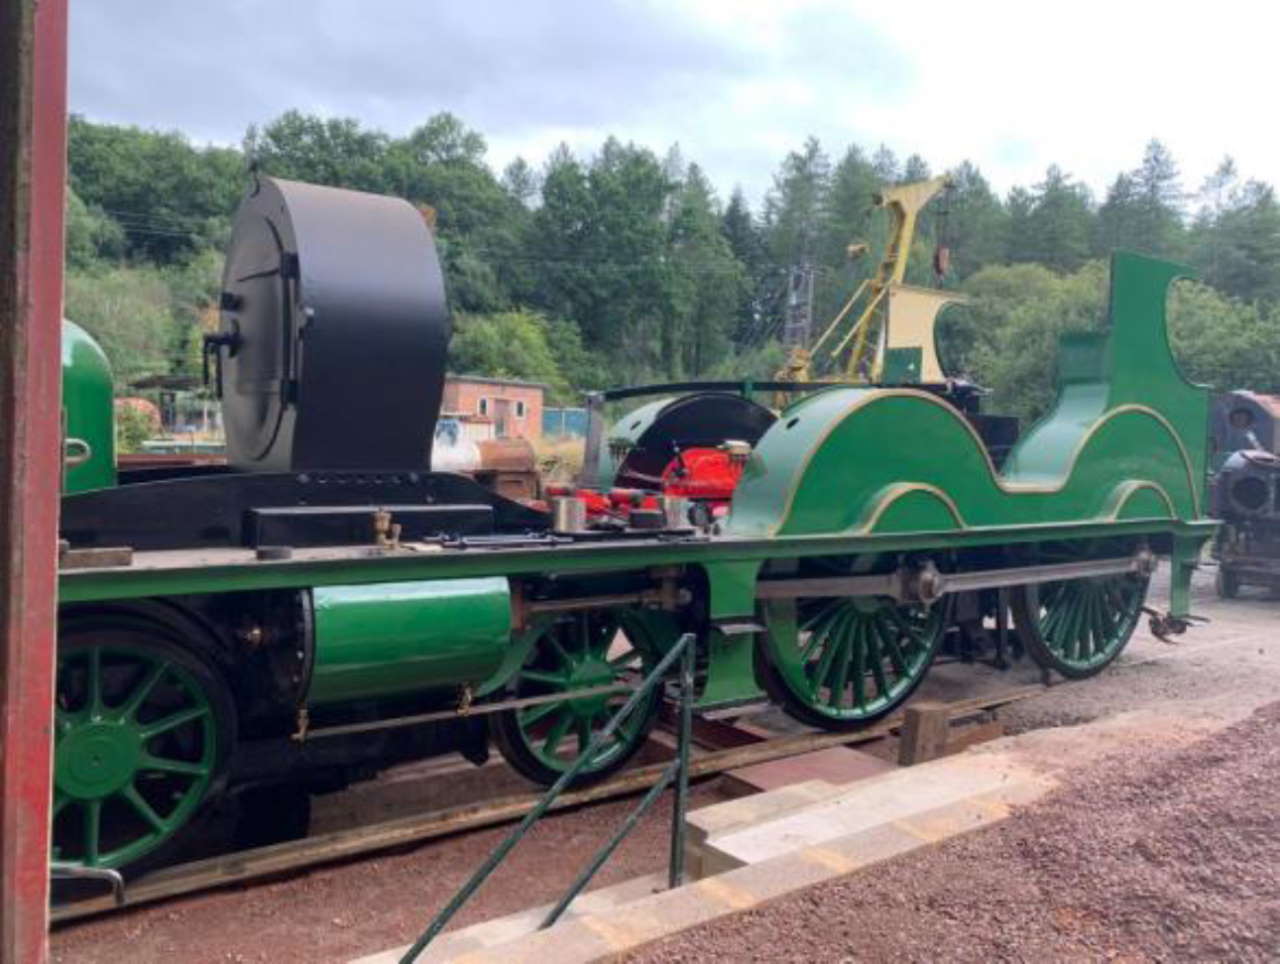 an-update-on-swanage-railway-t3-steam-locomotive-no-563